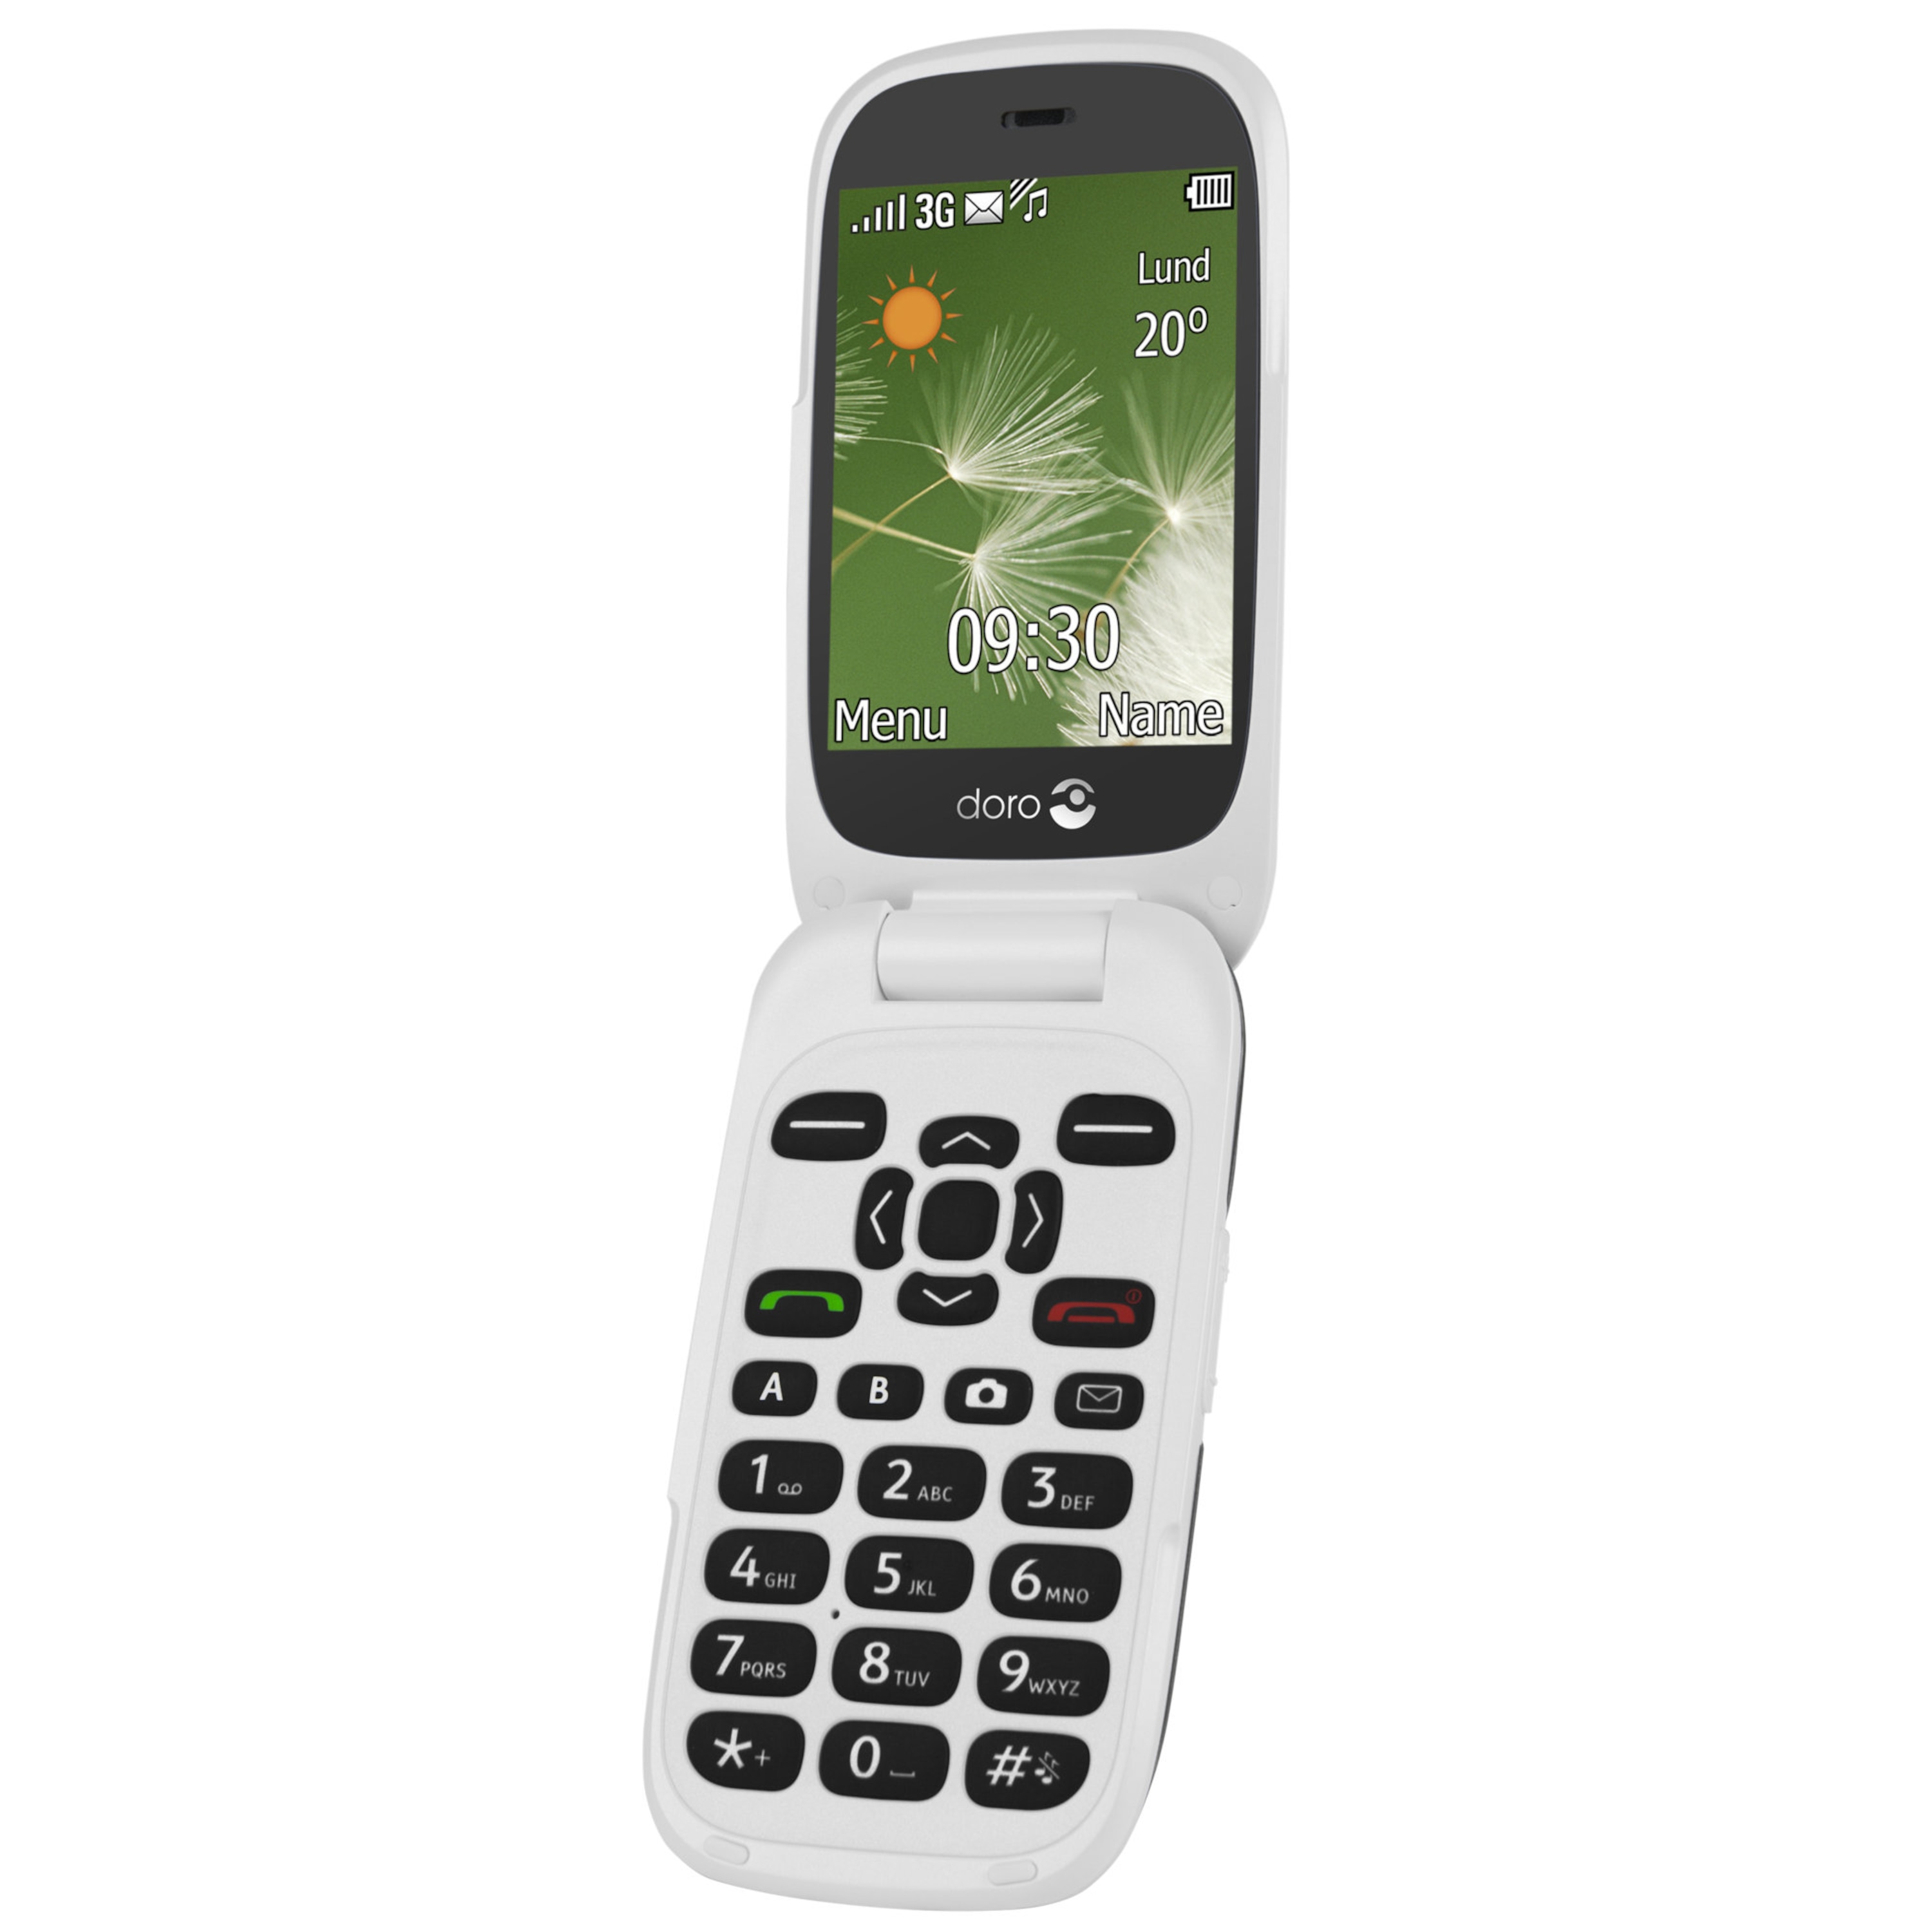 DORO 6520 Mobiltelefon, 7,11 cm (2,8'') Farbdisplay, Telefonbuch mit 500 Speicherplätzen, Bluetooth 2.1, 2 MP Kamera